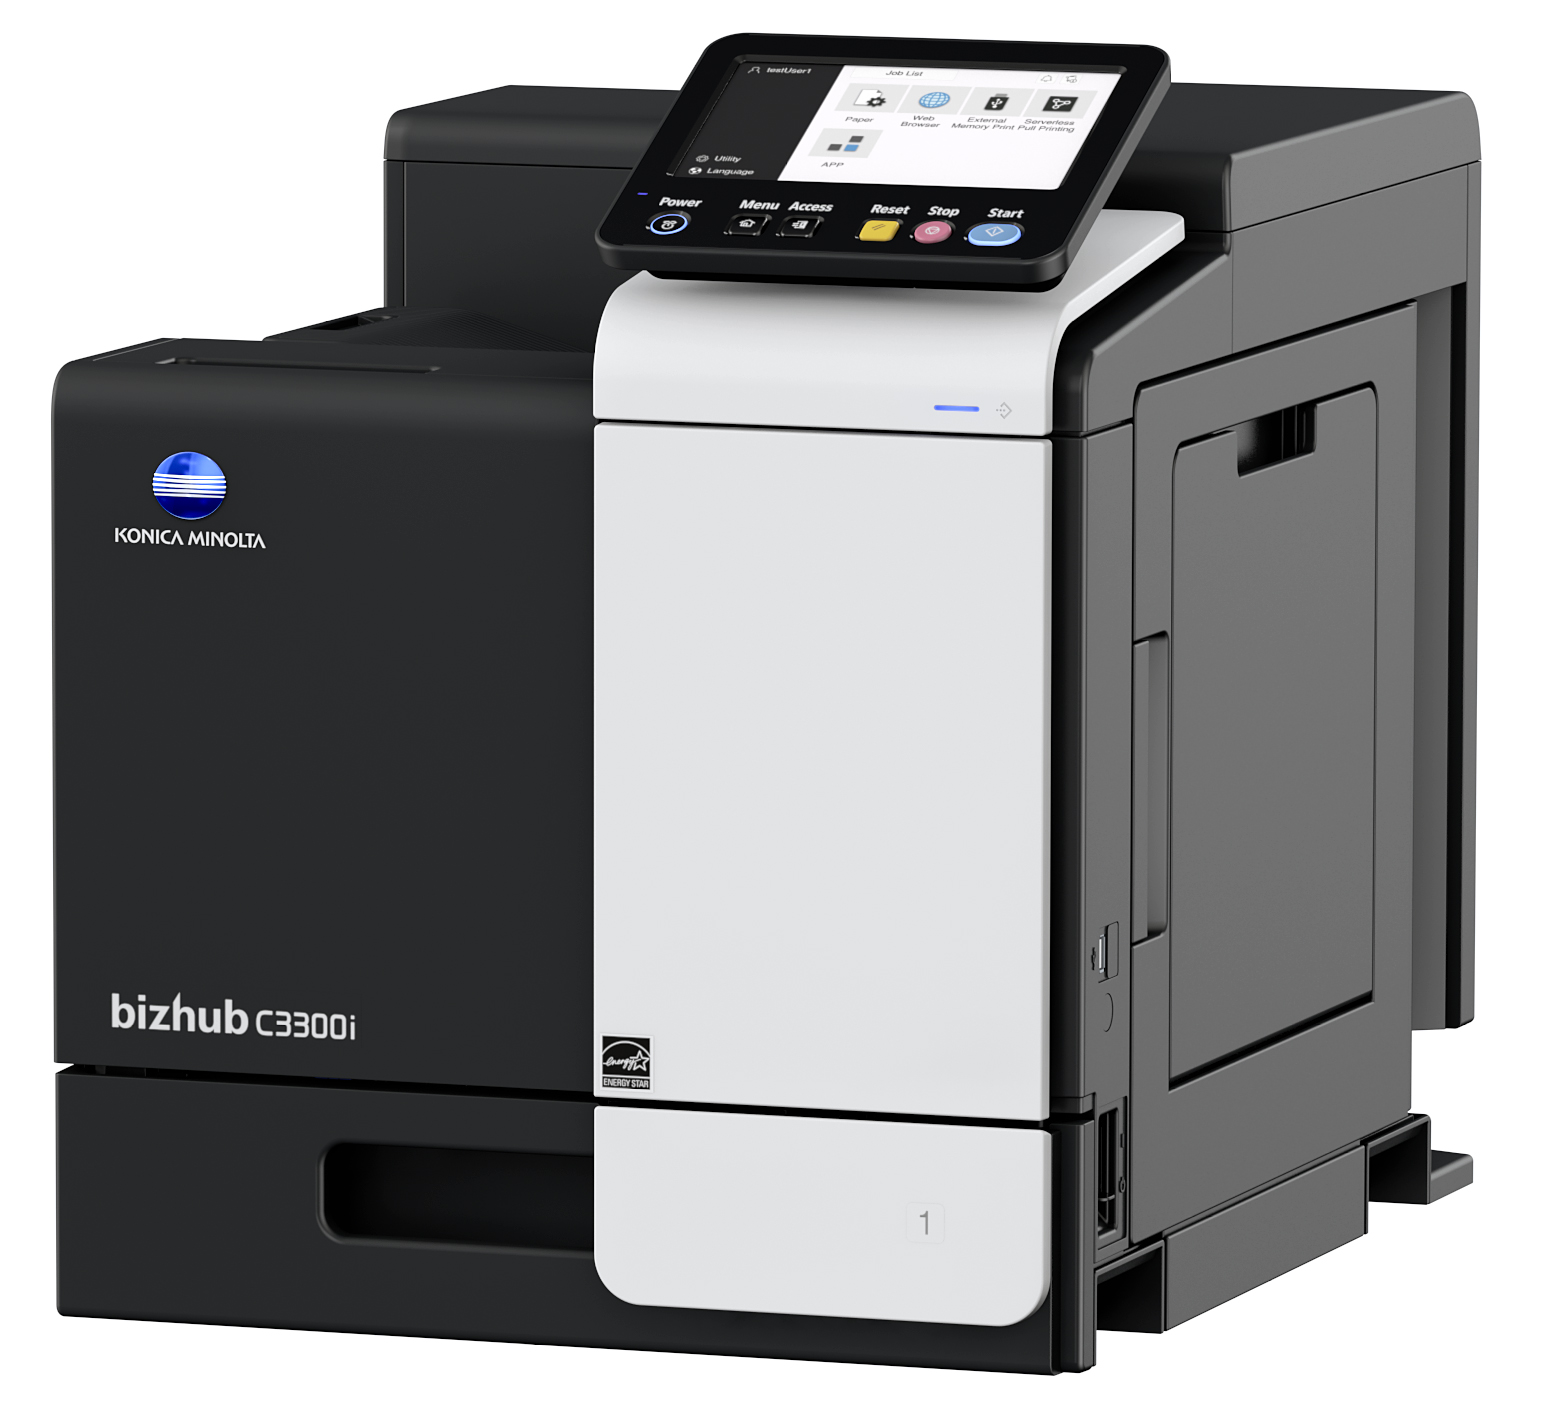 2-柯尼卡美能达全新一代i-系列A4彩色激光打印机bizhub C3300i.jpg